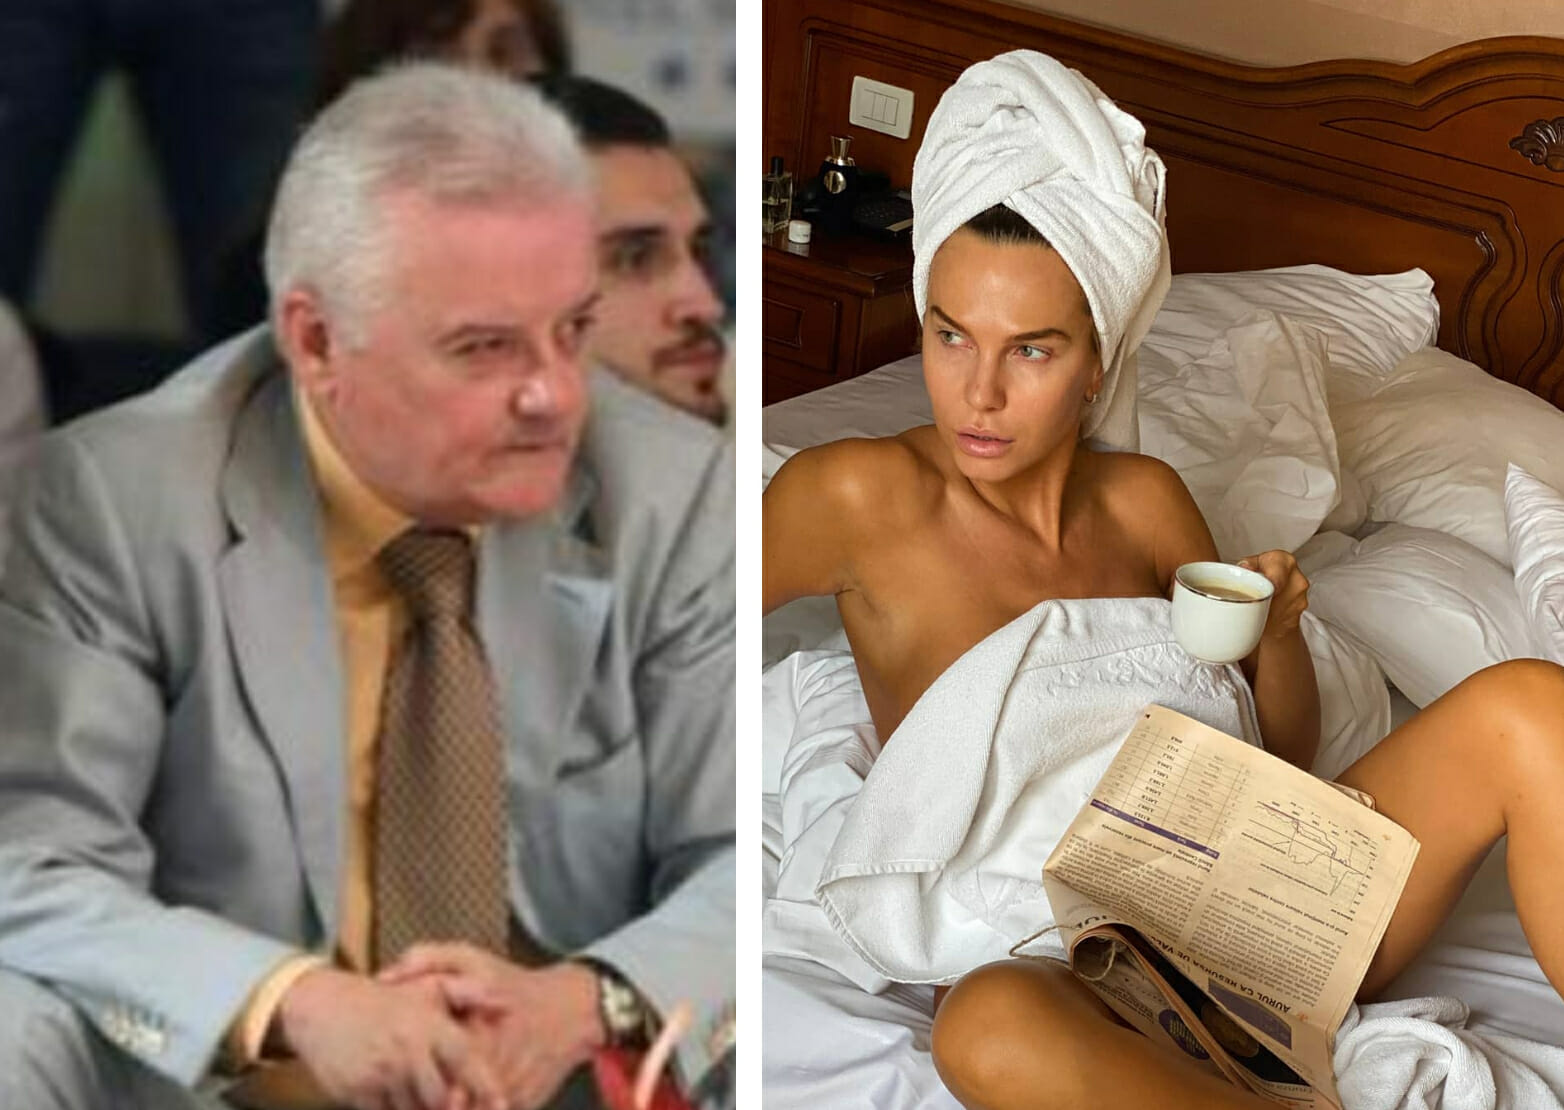 S-a aflat după 20 de ani! Anna Lesko a fost alungată de la Izvorani de fostul nomenclaturist Ion Columbeanu: ”Ieși din casa fiului meu, rusoaico!”